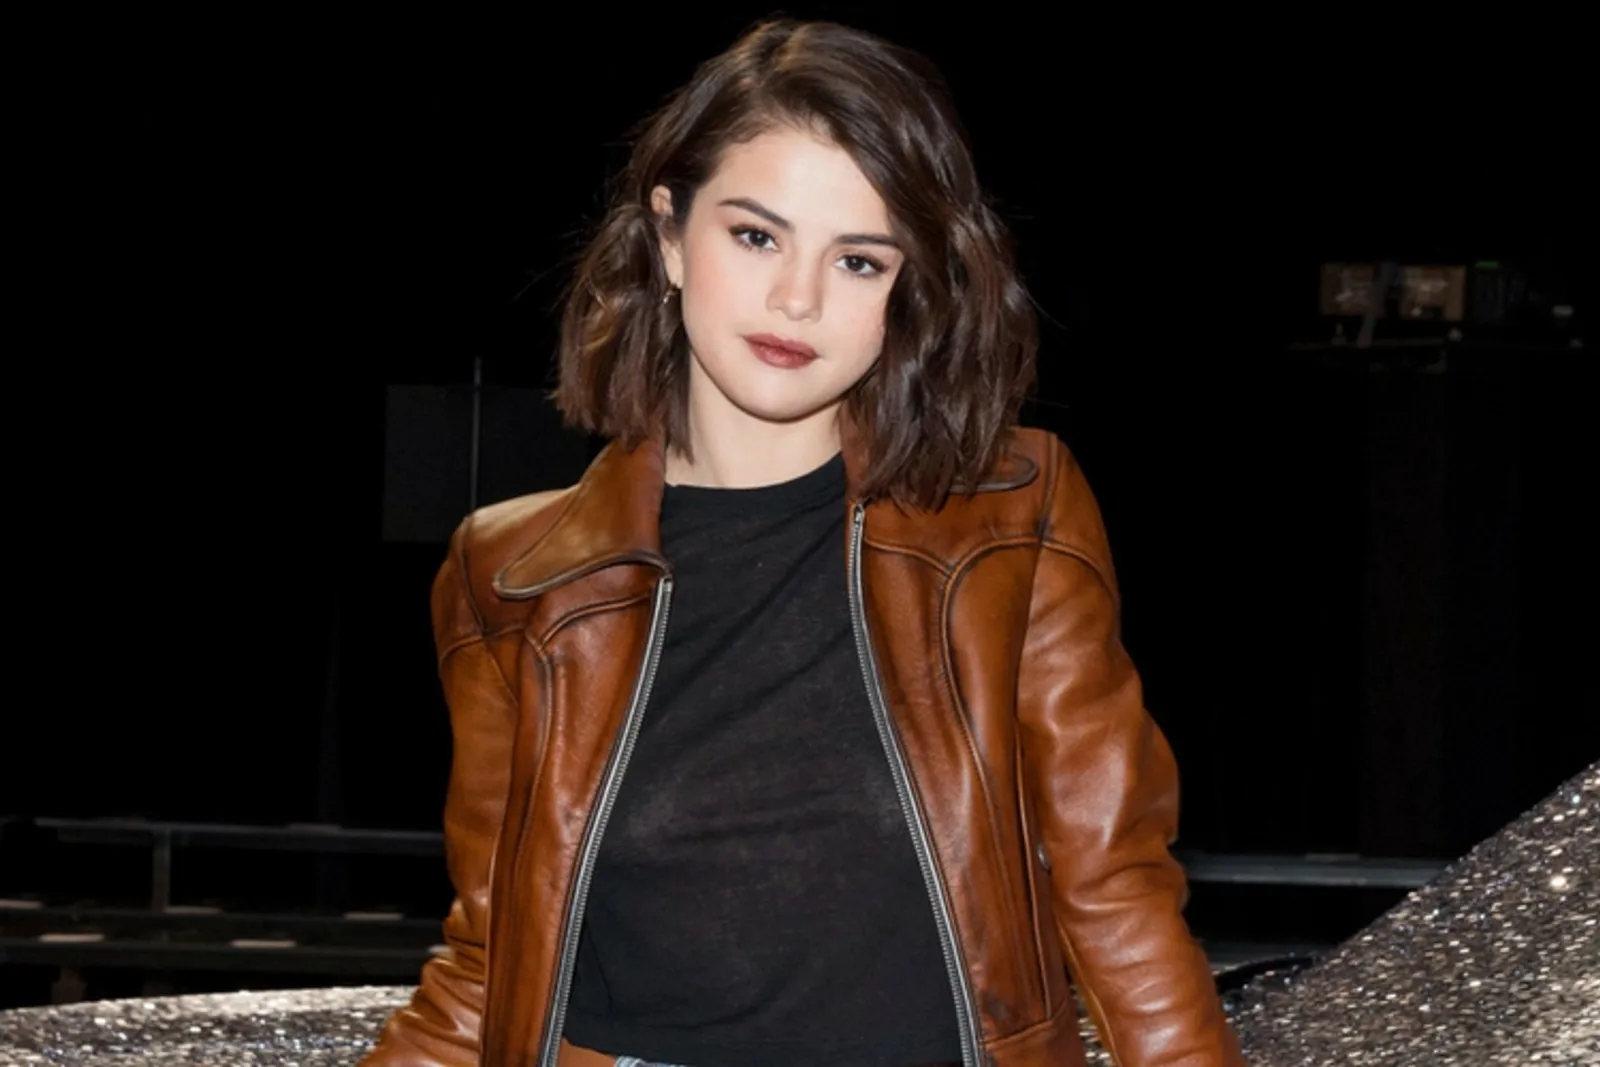 Tampil di Acara Puma, Ini Penampilan Selena Gomez dengan Rambut Baru